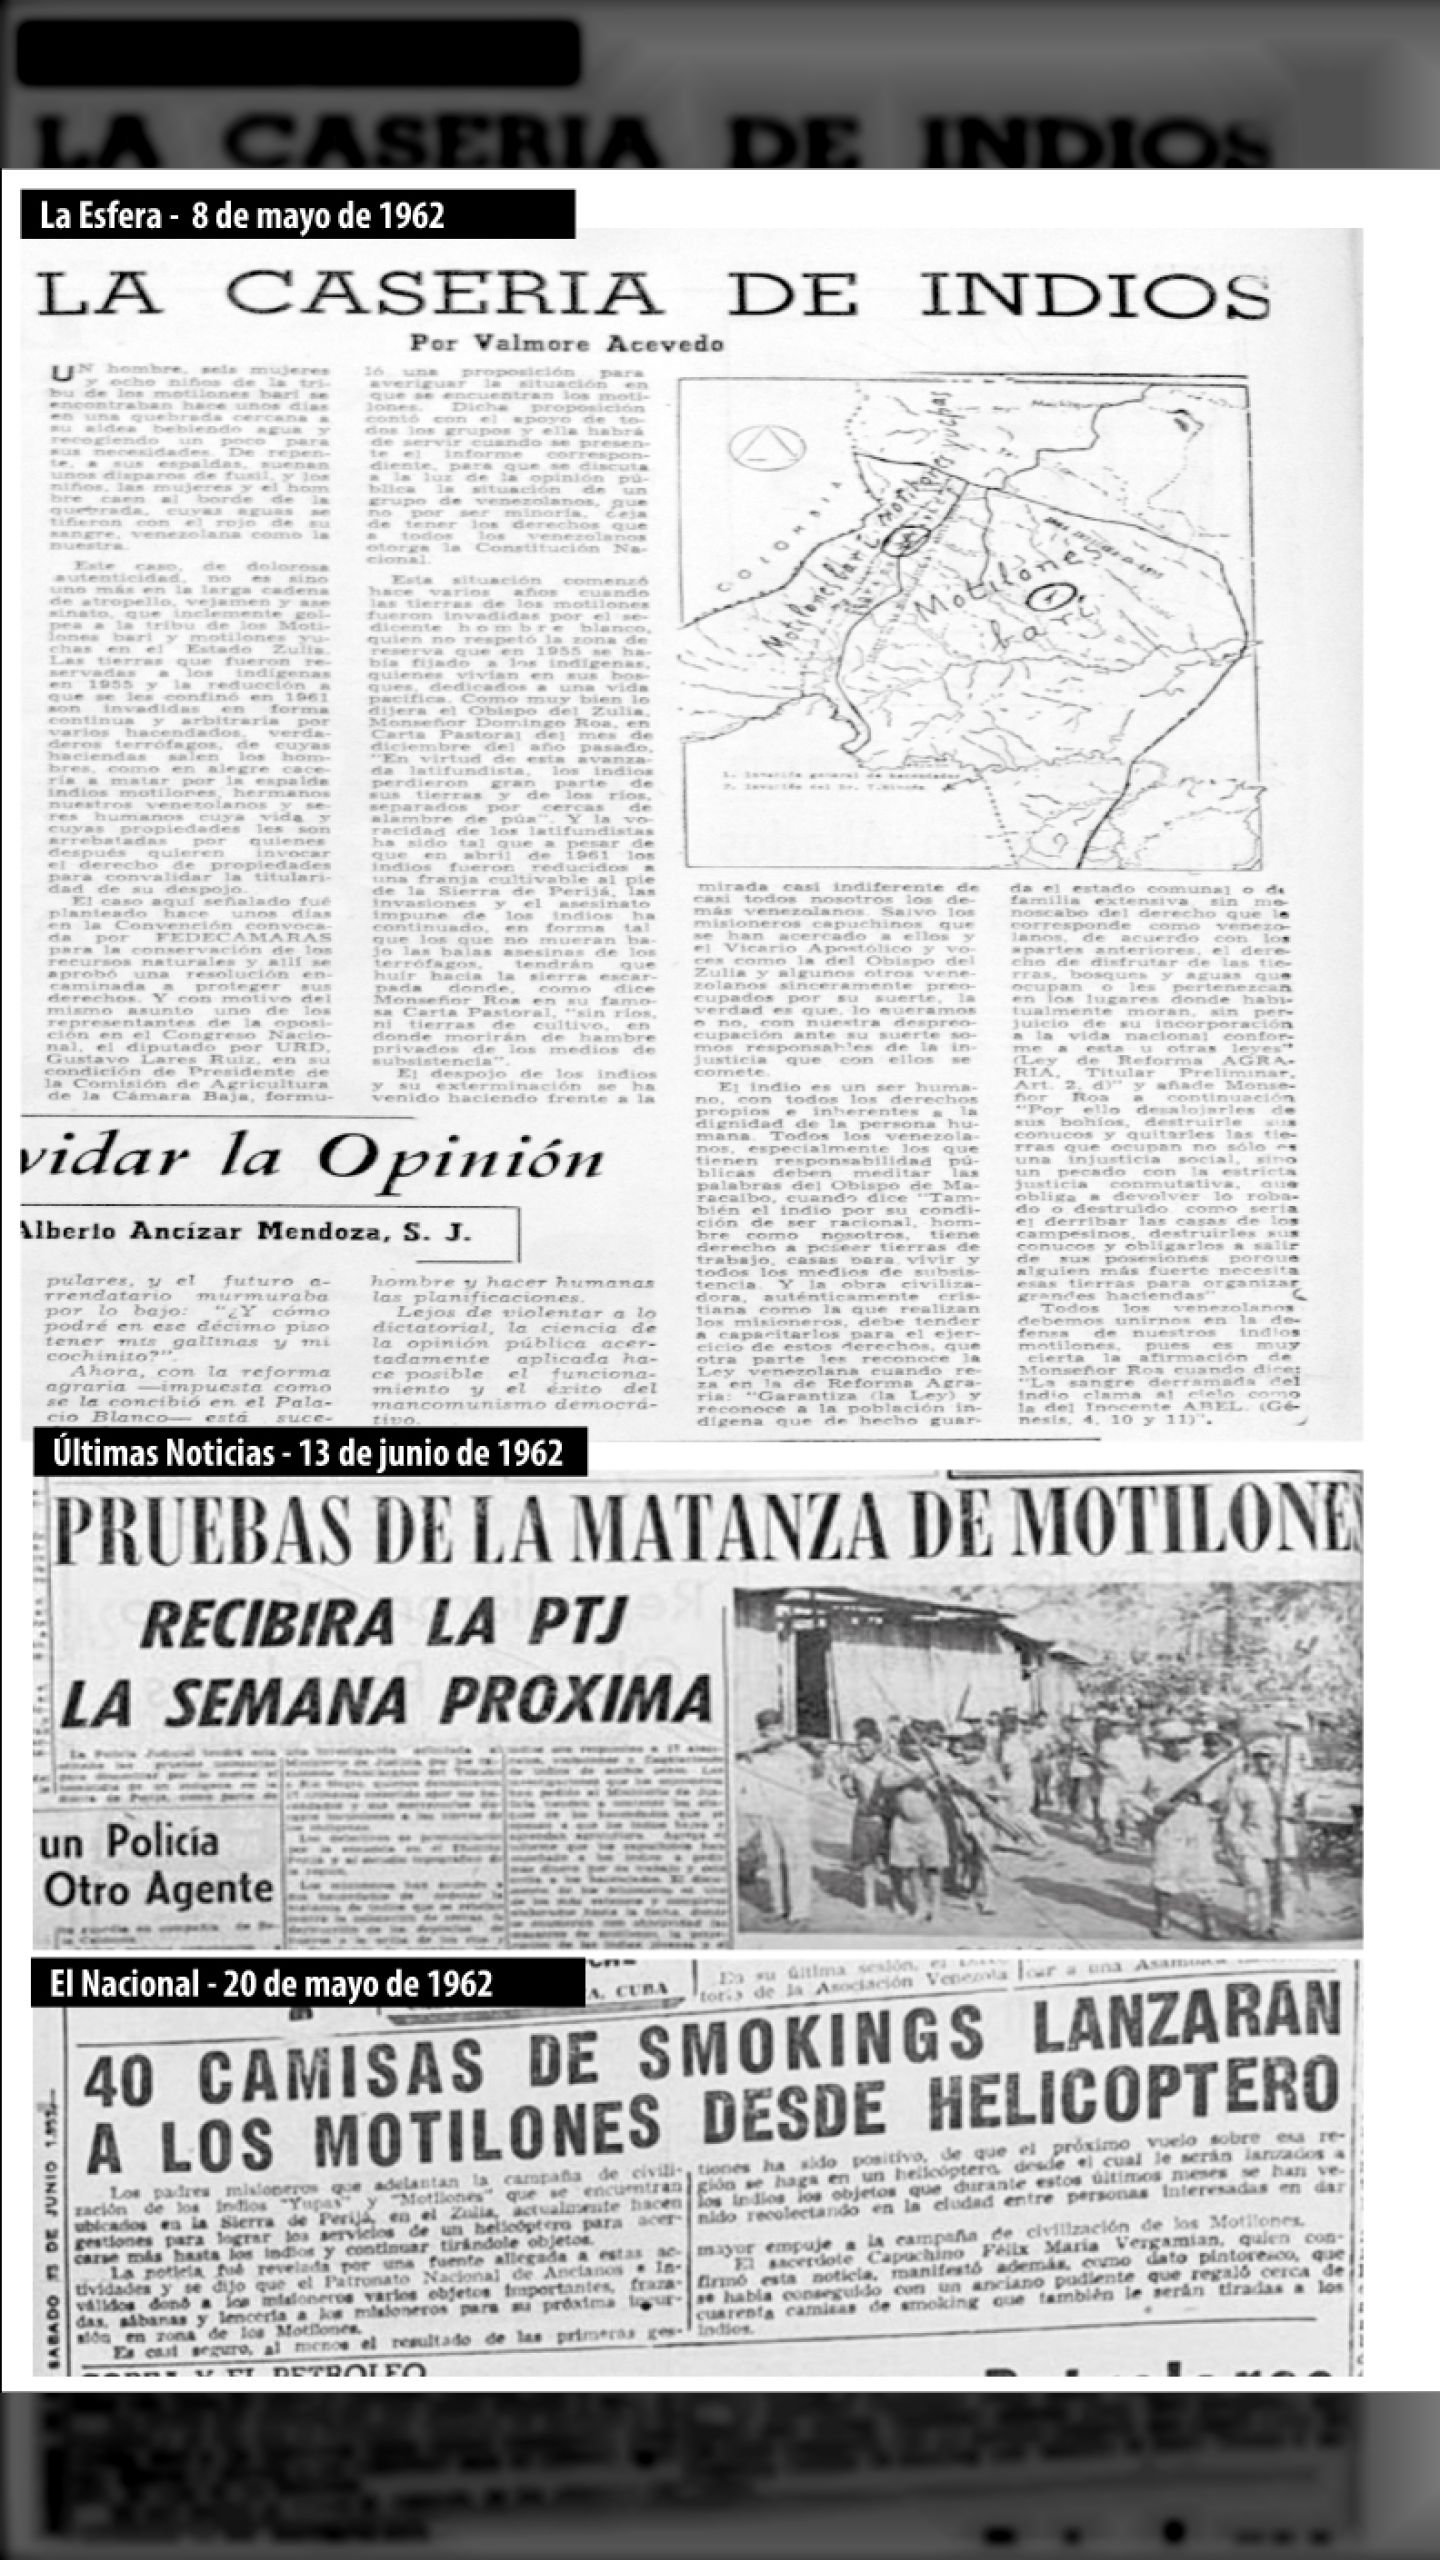 MASACRE DE MOTILONES EN LA SIERRA DE PERIJÁ (LA ESFERA, 08 de mayo 1962)